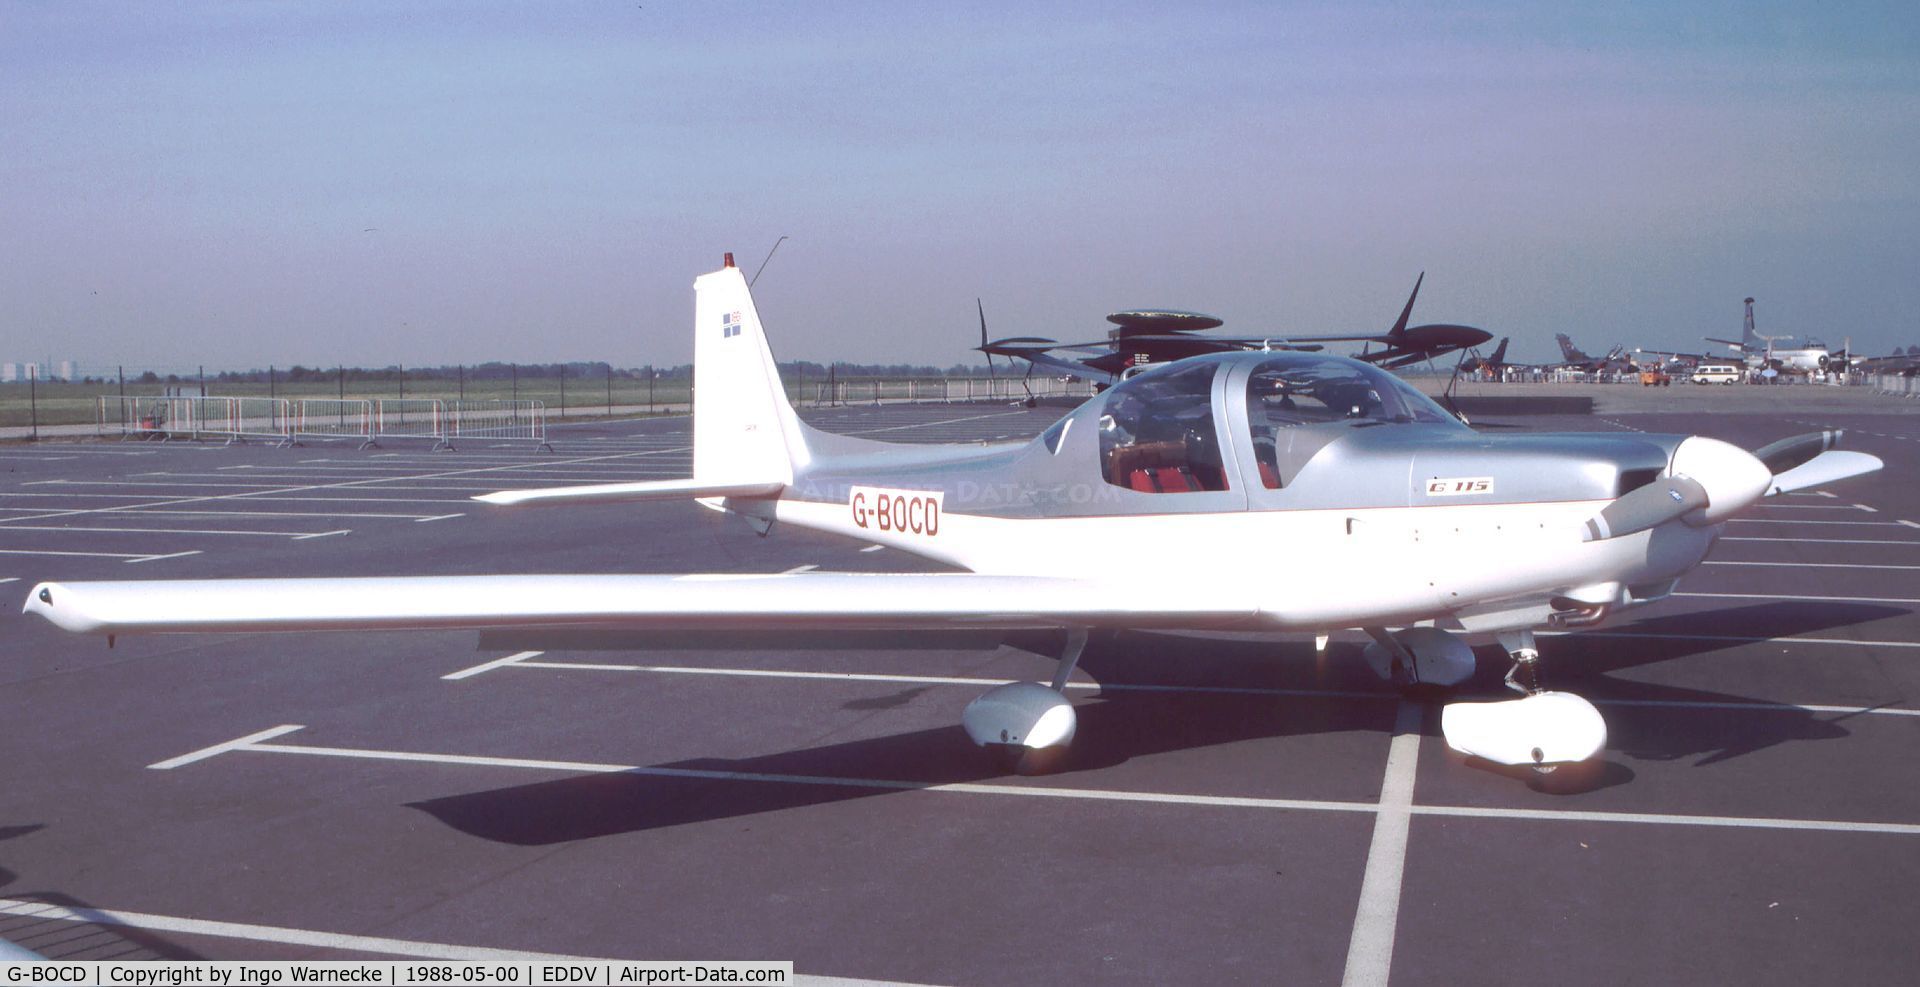 G-BOCD, 1988 Grob G-115 C/N 8024, Grob G.115 at the ILA 1988, Hannover